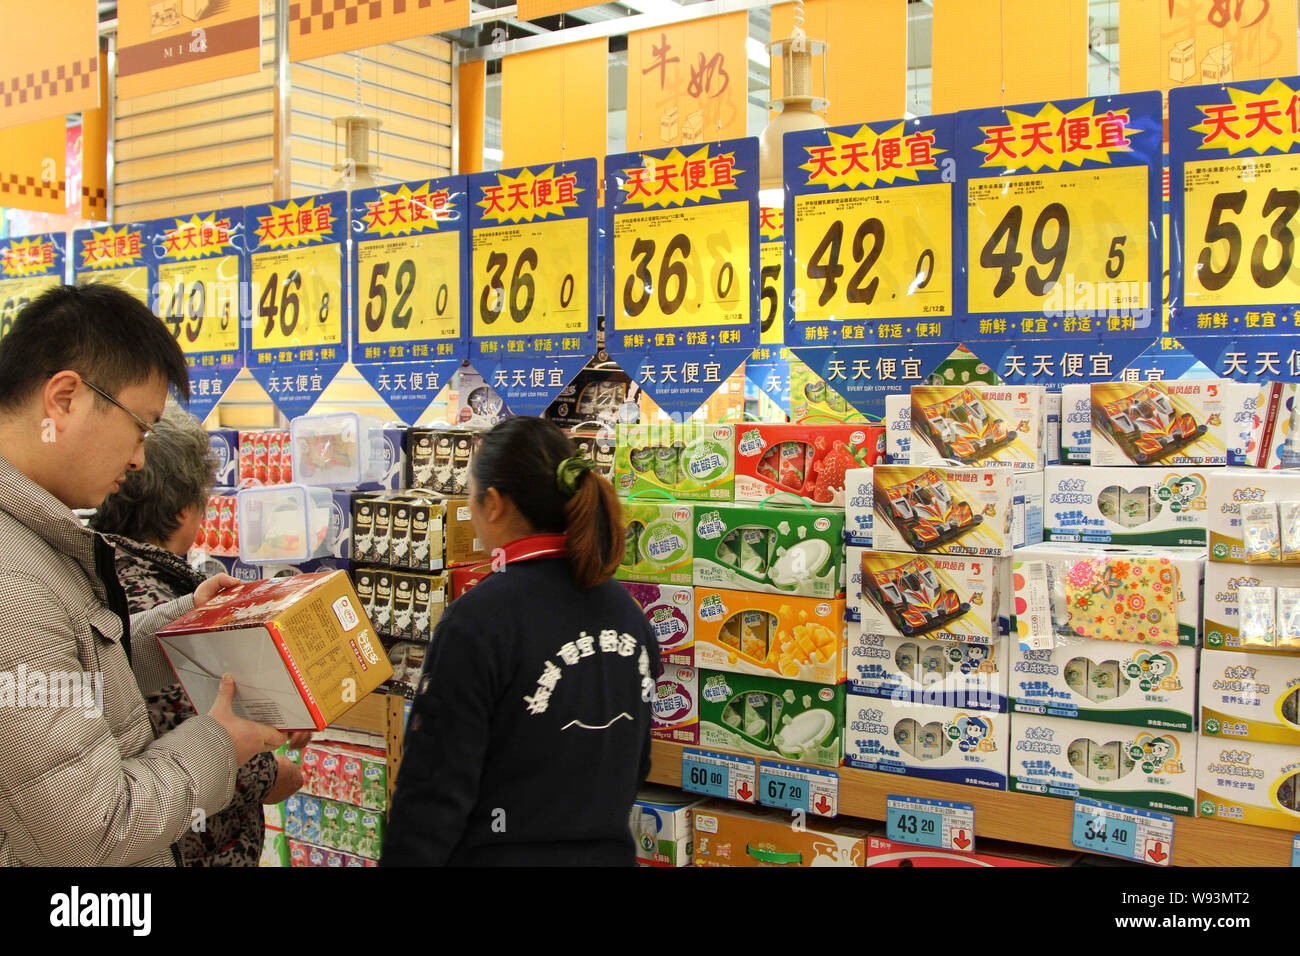 --FILE--Los consumidores seleccionar aperitivos en un supermercado en Hefei, provincia de Anhui, China oriental, el 9 de enero de 2013. Creo Chinas será la tasa de crecimiento de alrededor del 8% Foto de stock